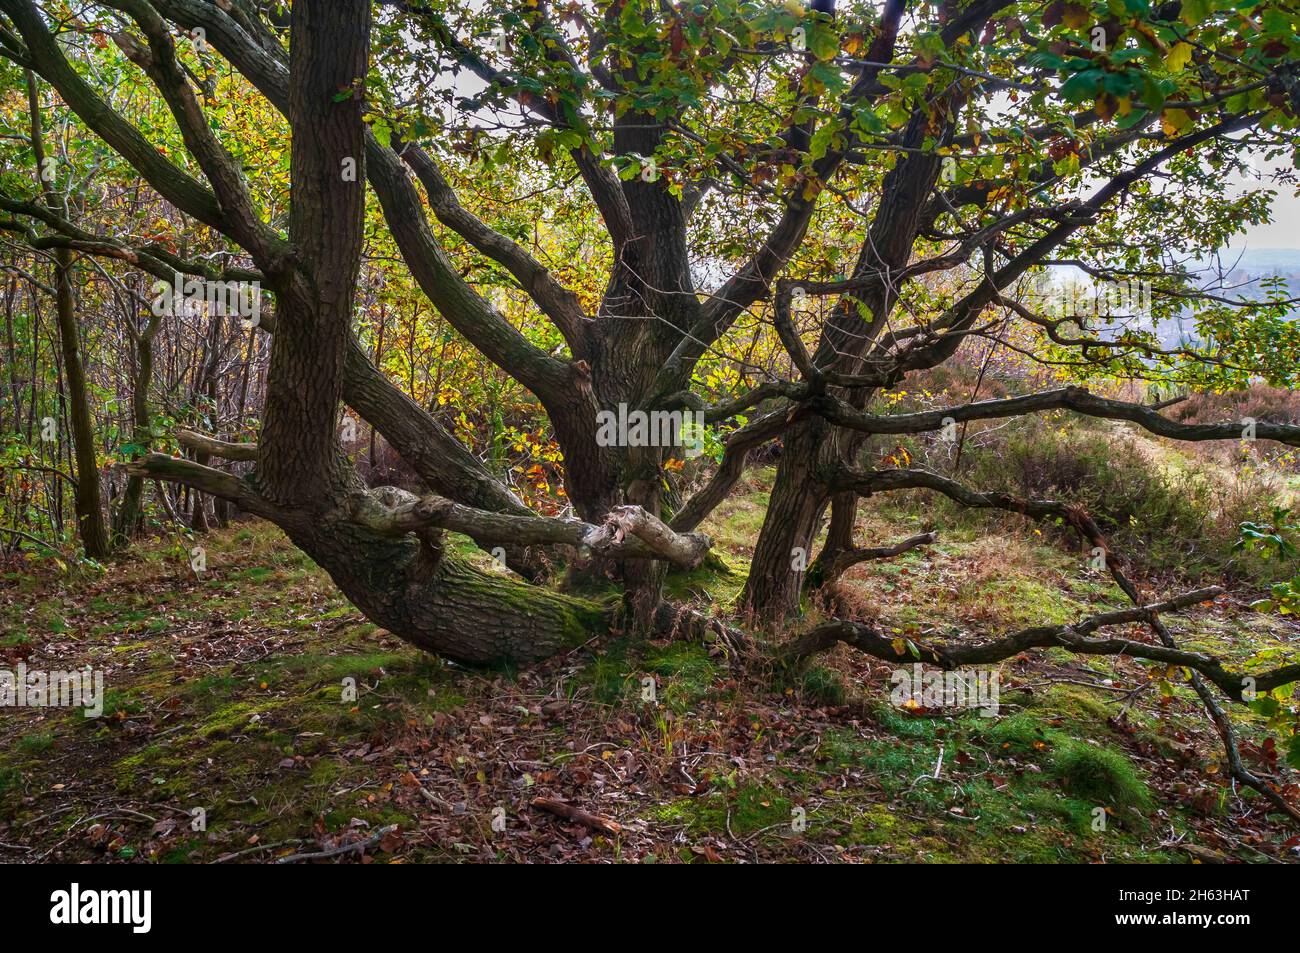 Ancien chêne copiqué à tiges multiples (Quercus robur), en plein soleil d'automne à Wincobank Wood, Sheffield, dans le Yorkshire du Sud. Banque D'Images